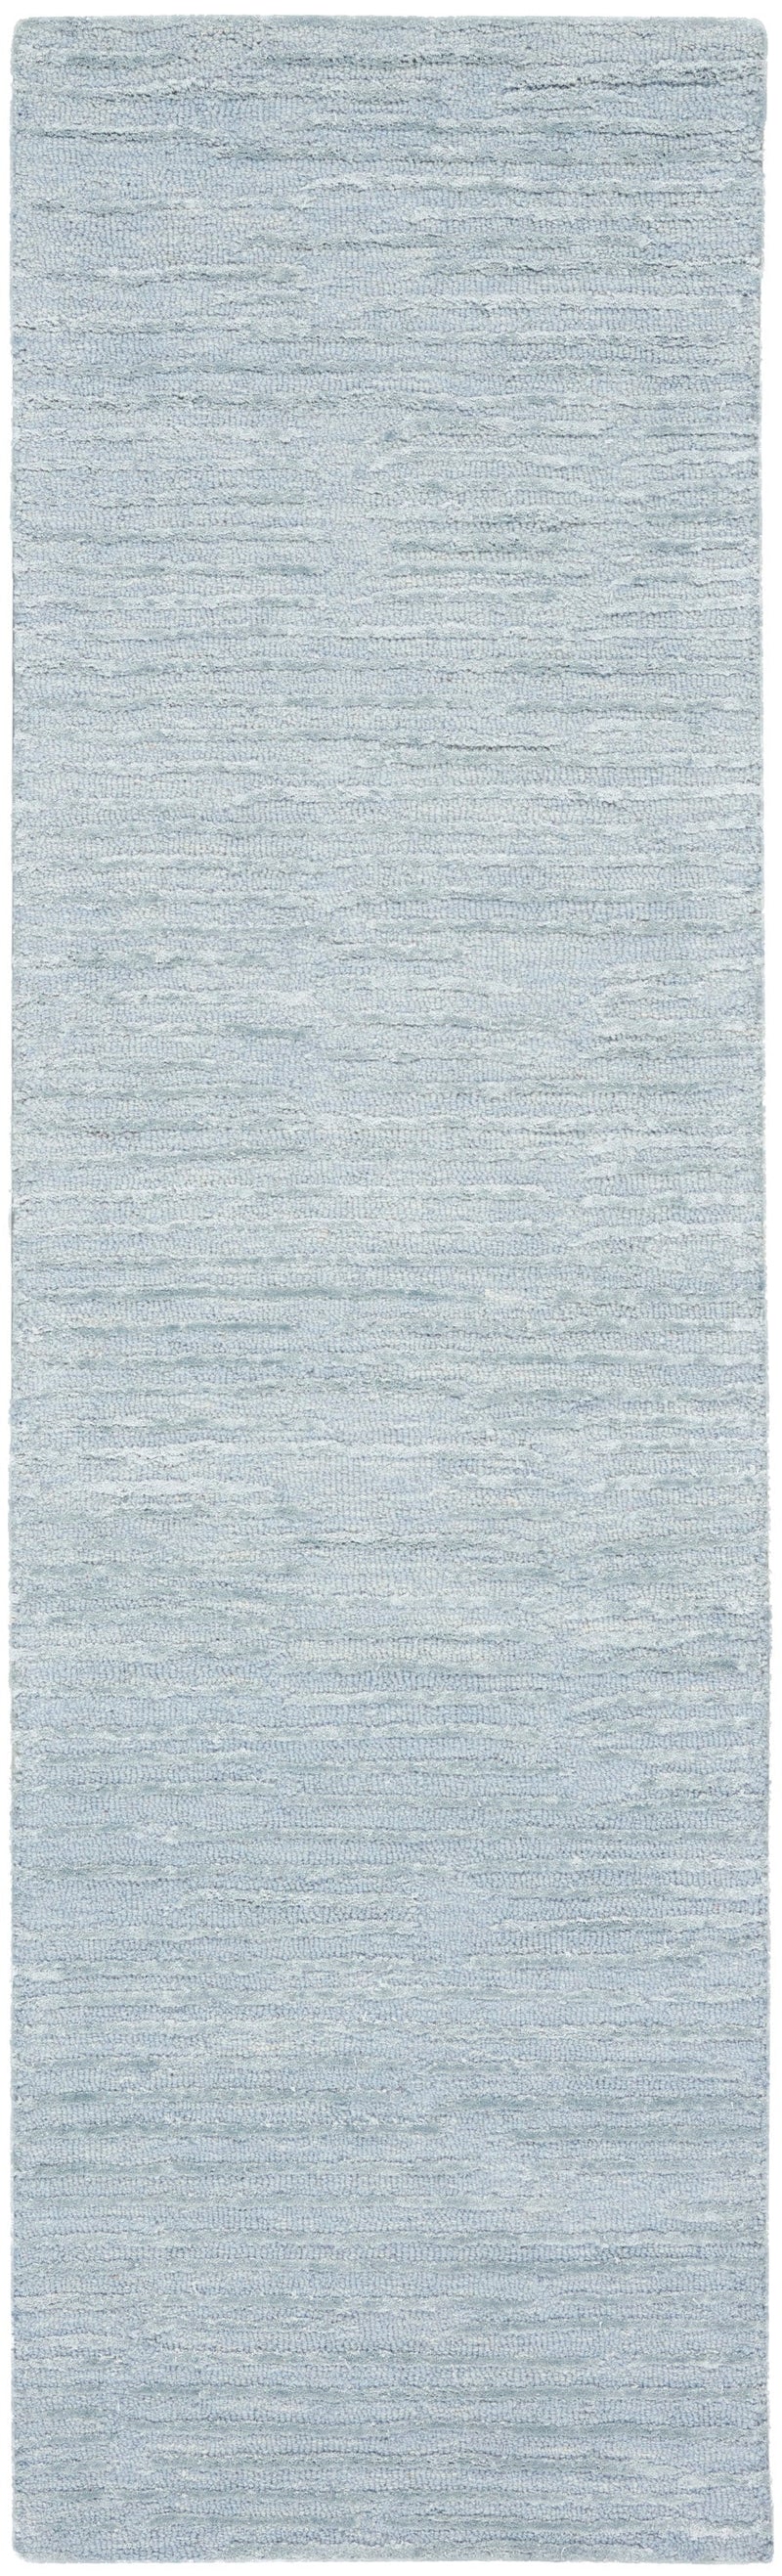 media image for ck010 linear handmade light blue rug by nourison 99446879950 redo 2 247